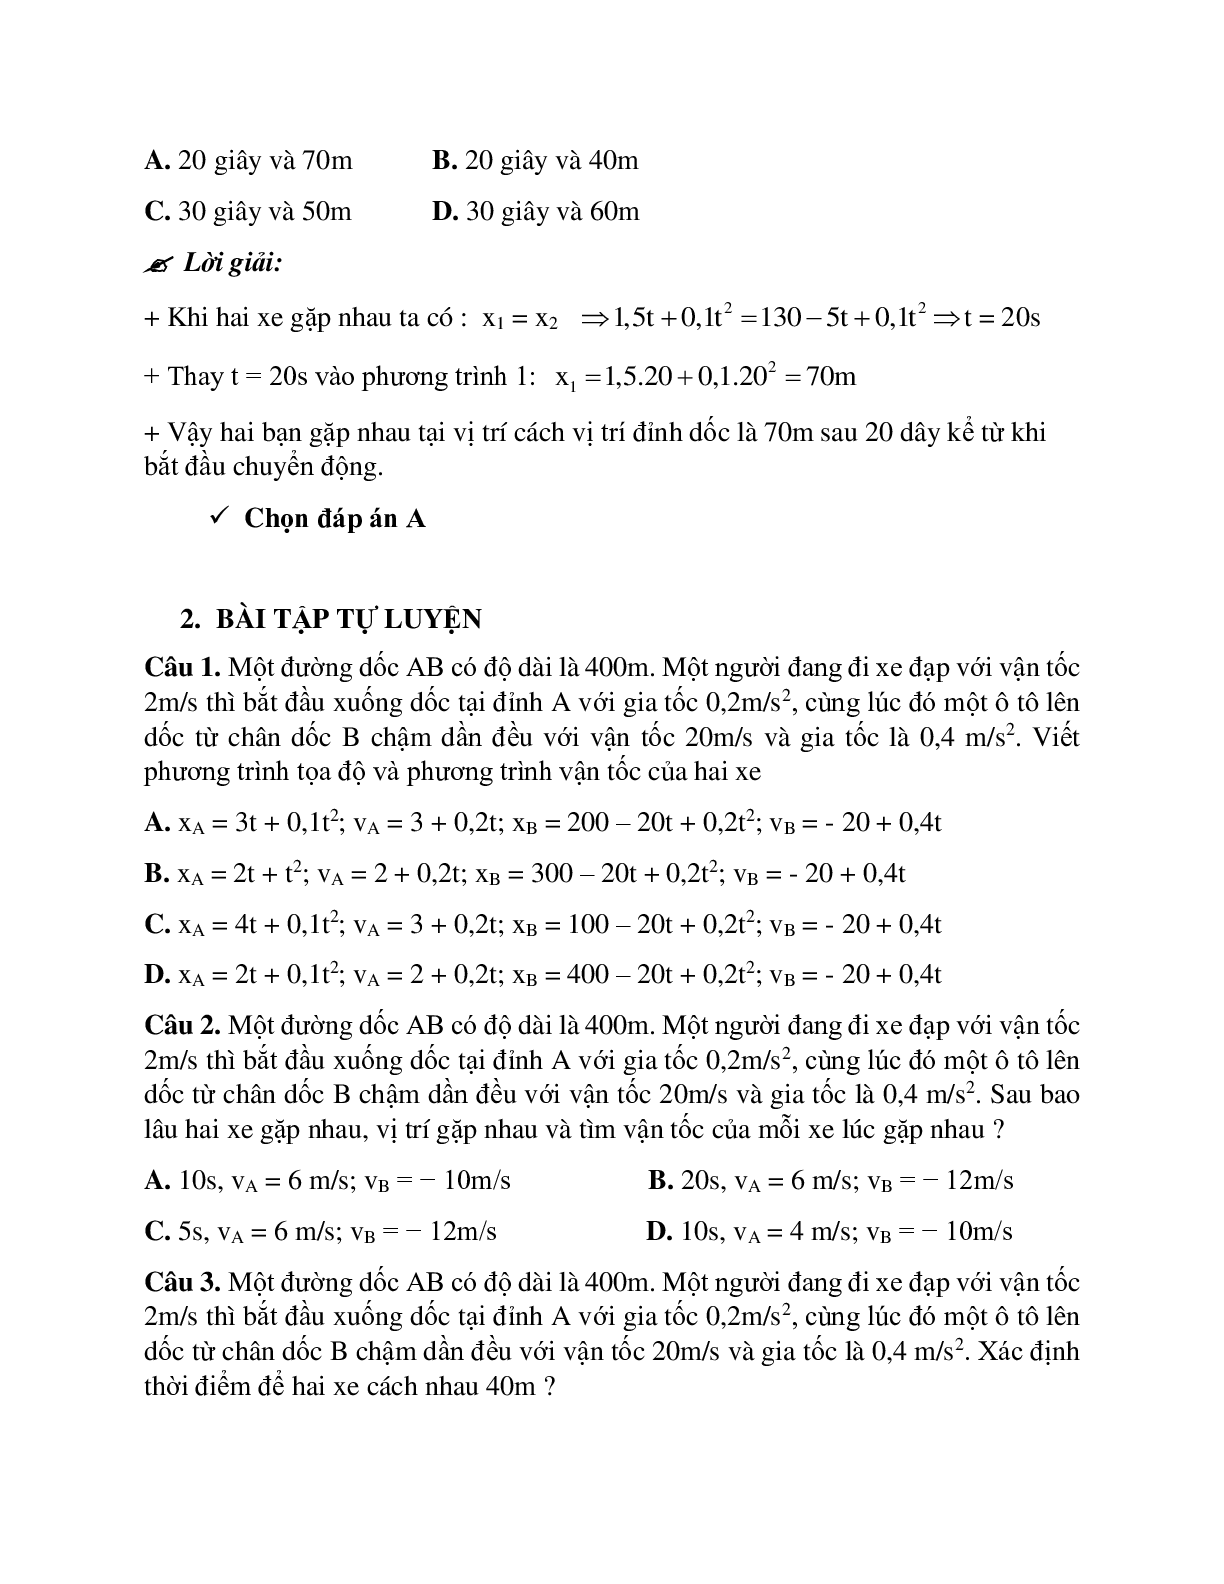 Phương pháp giải và bài tập về Xác định vị trí và thời điểm hai xe gặp nhau trong chuyển động thẳng biến đổi đều (trang 5)